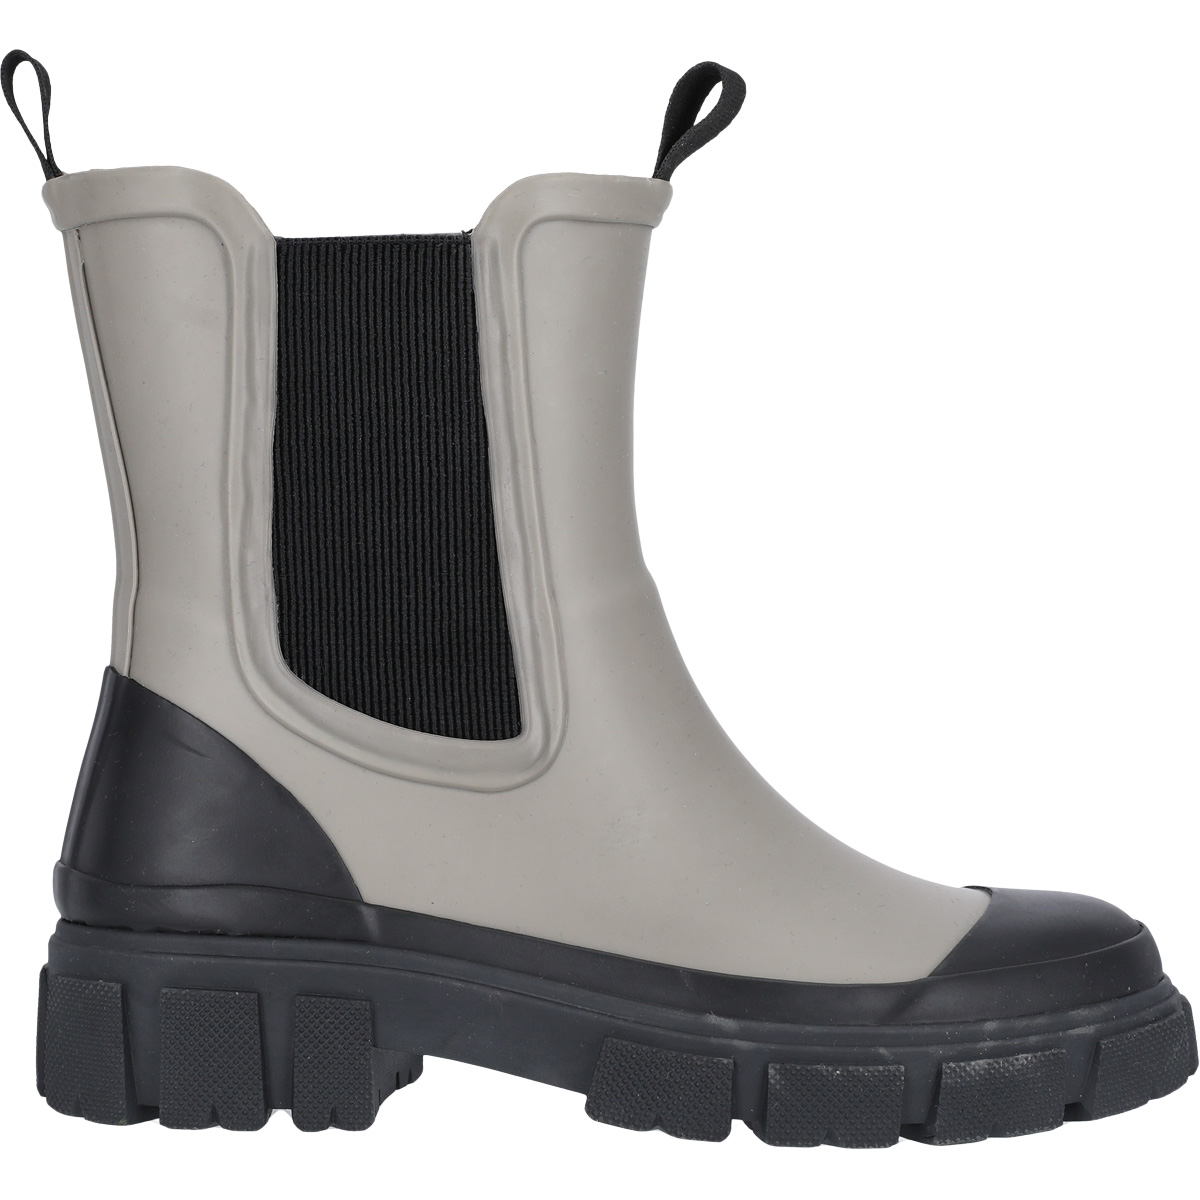 smidig Footpad beslag Gummistøvler til damer - Shop nye dame gummistøvler | SPORT 24